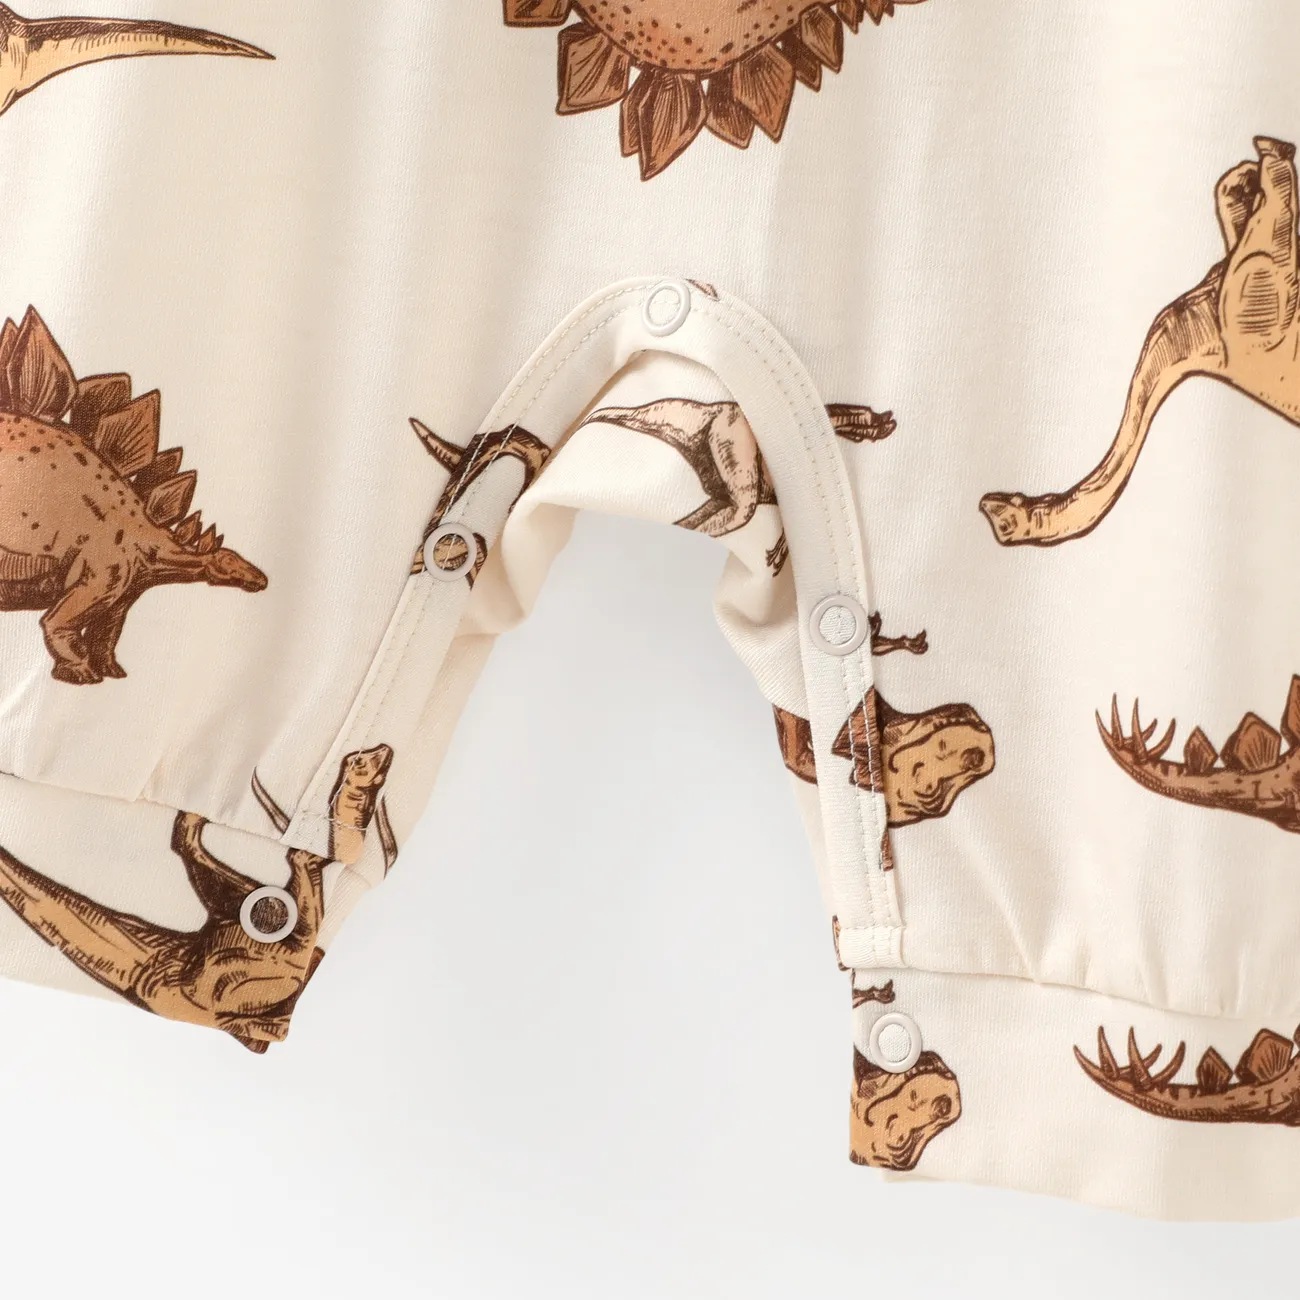 Conjunto de pijama con capucha de dinosaurio infantil para niños. Albaricoque big image 1